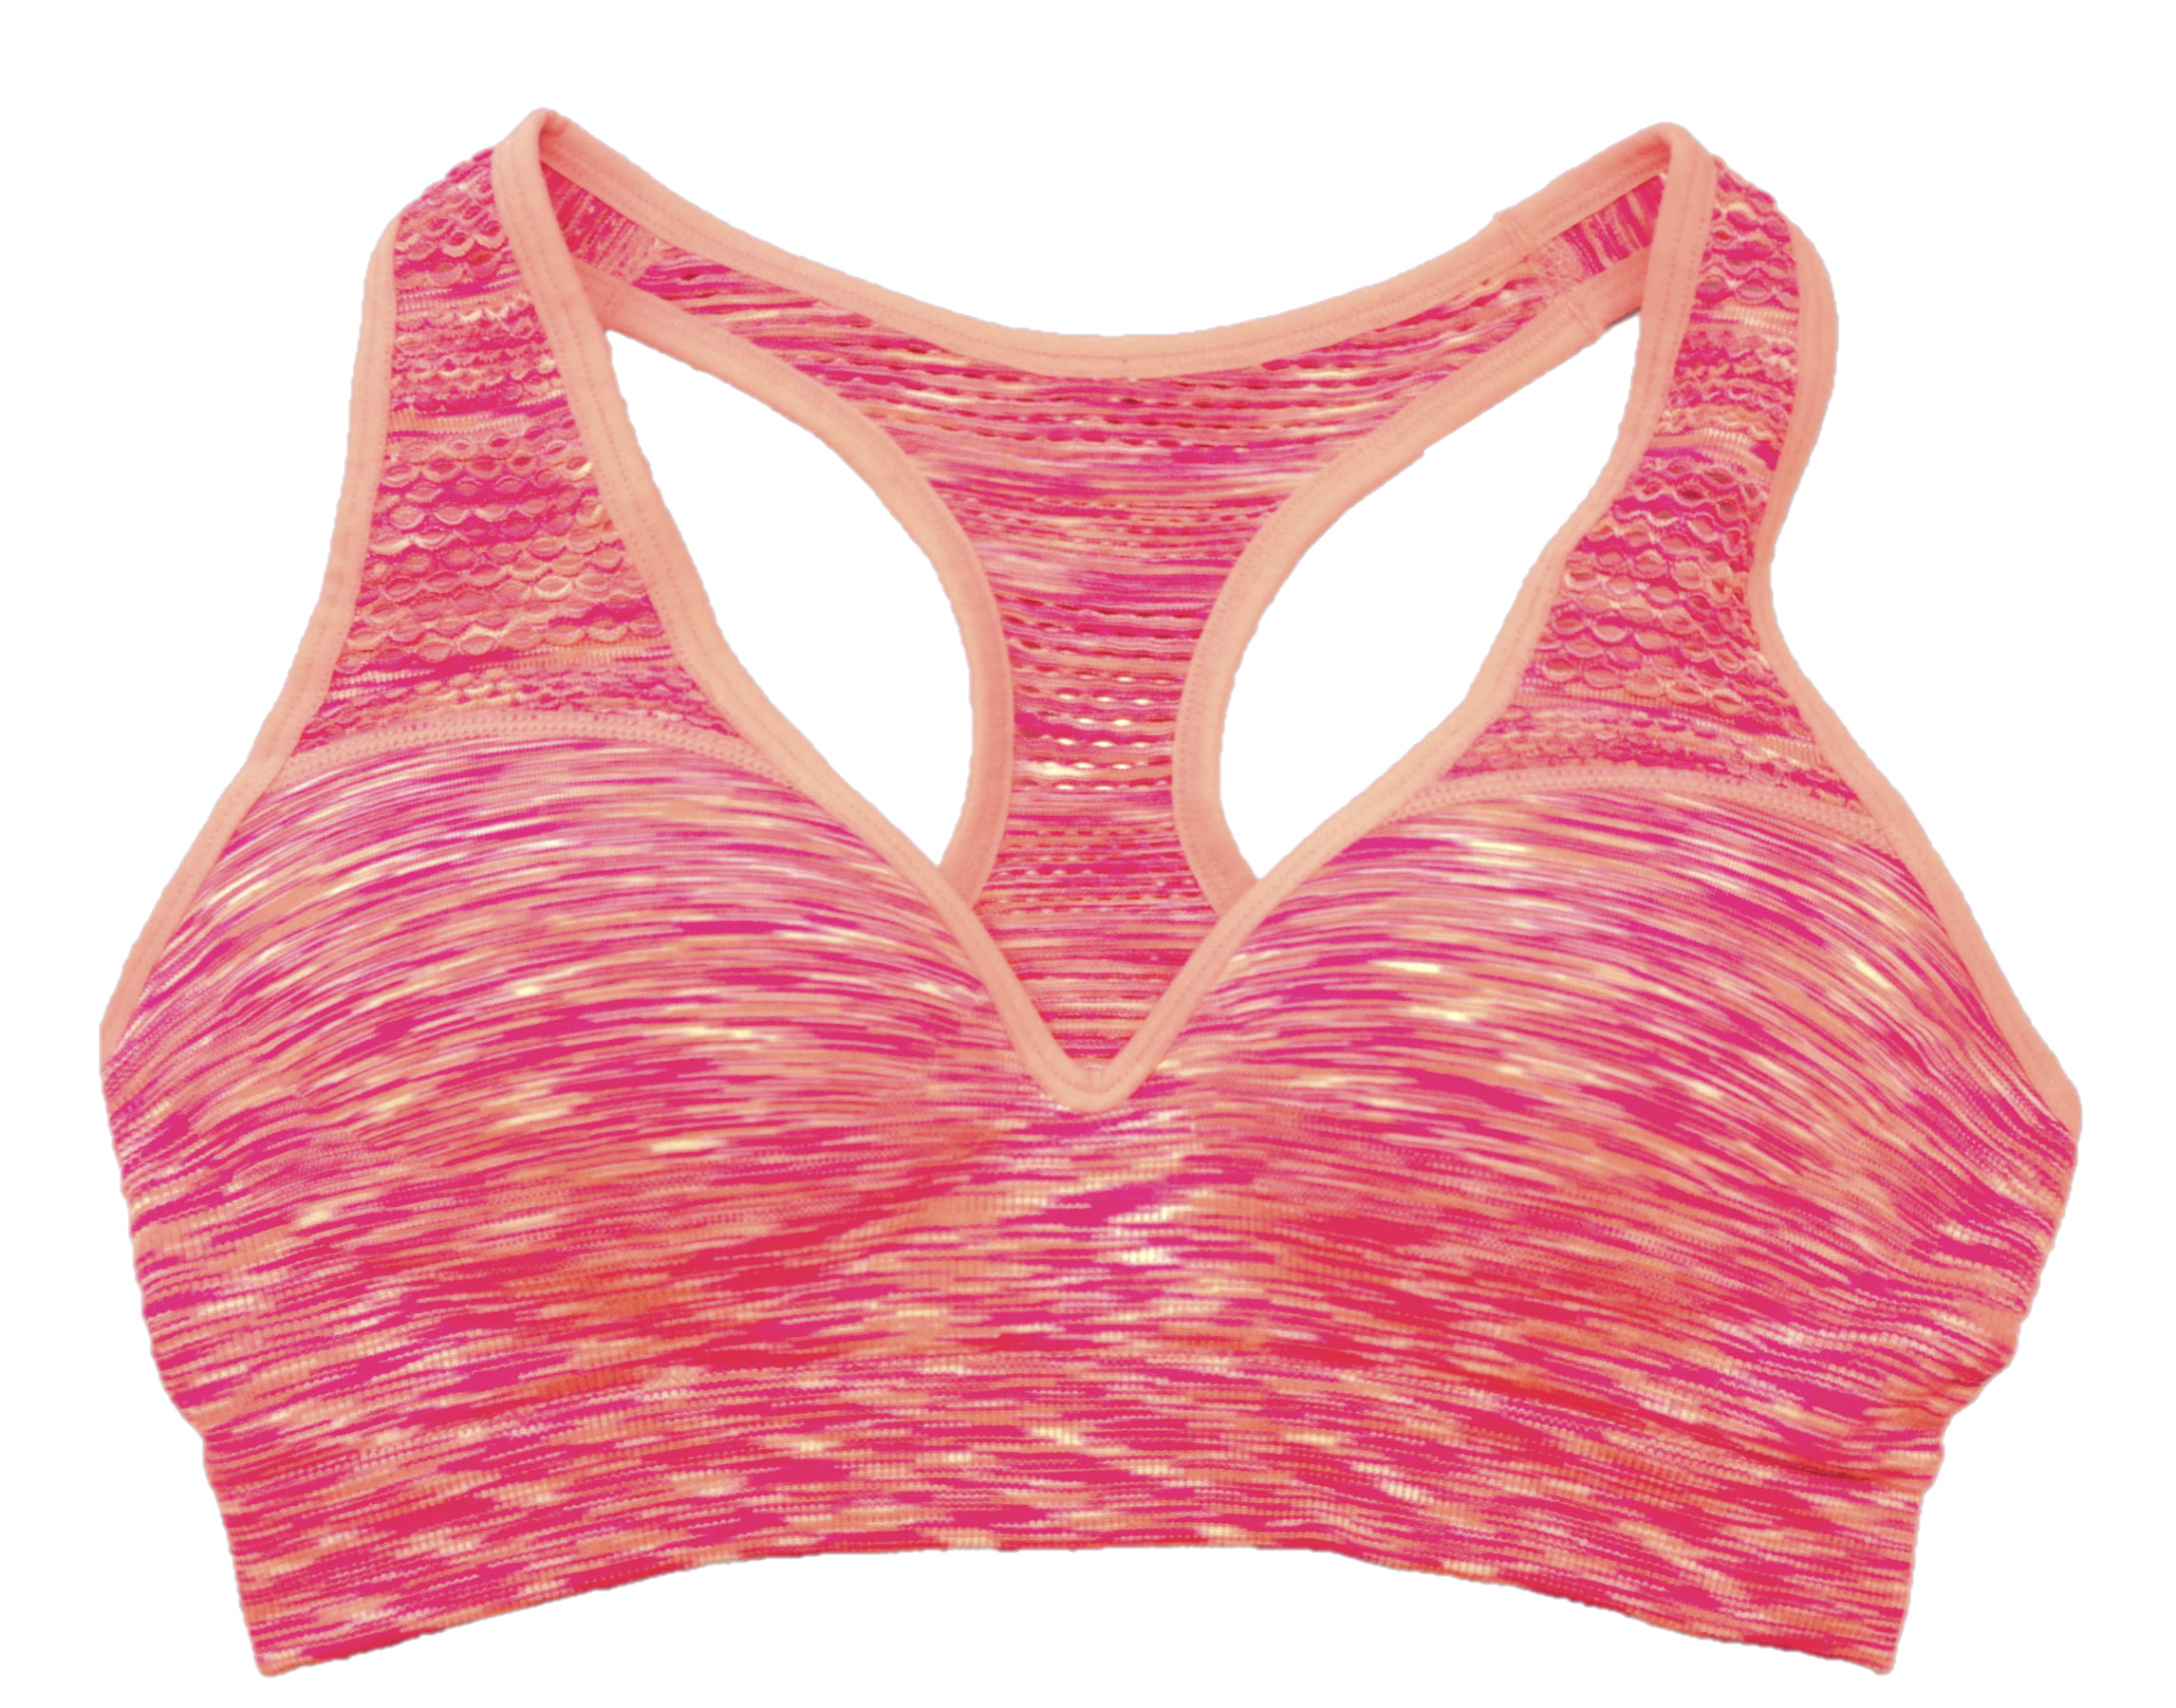 Victoria's Secret Pink Yoga Collection!✨💕 #vspink